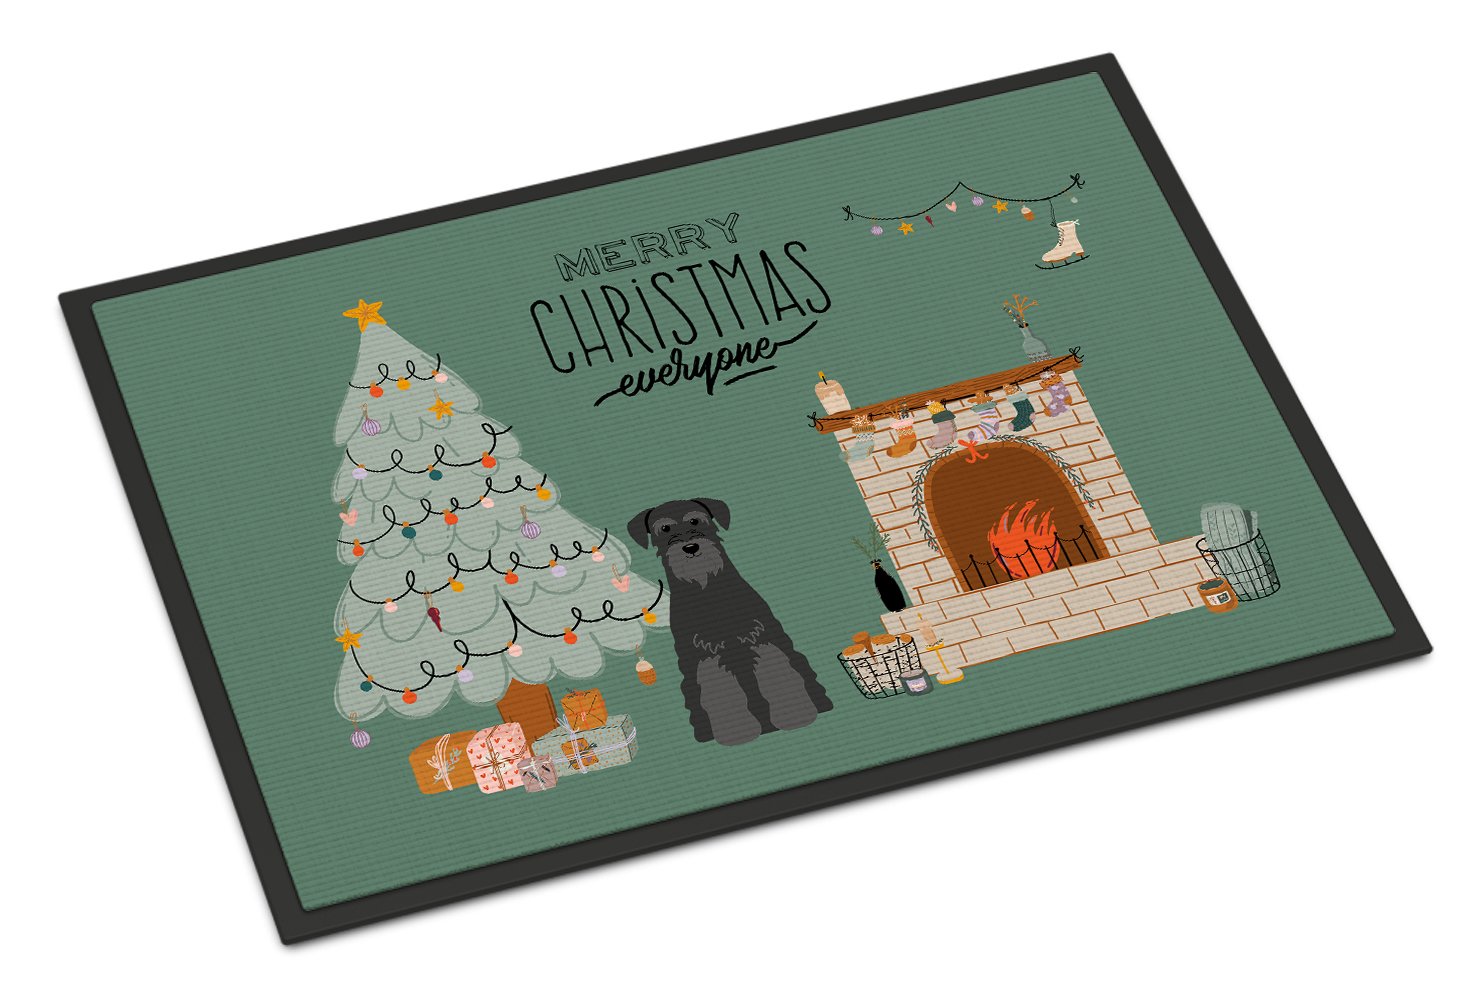 Black Standard Schnauzer Christmas Everyone Indoor or Outdoor Mat 24x36 CK7595JMAT by Caroline's Treasures